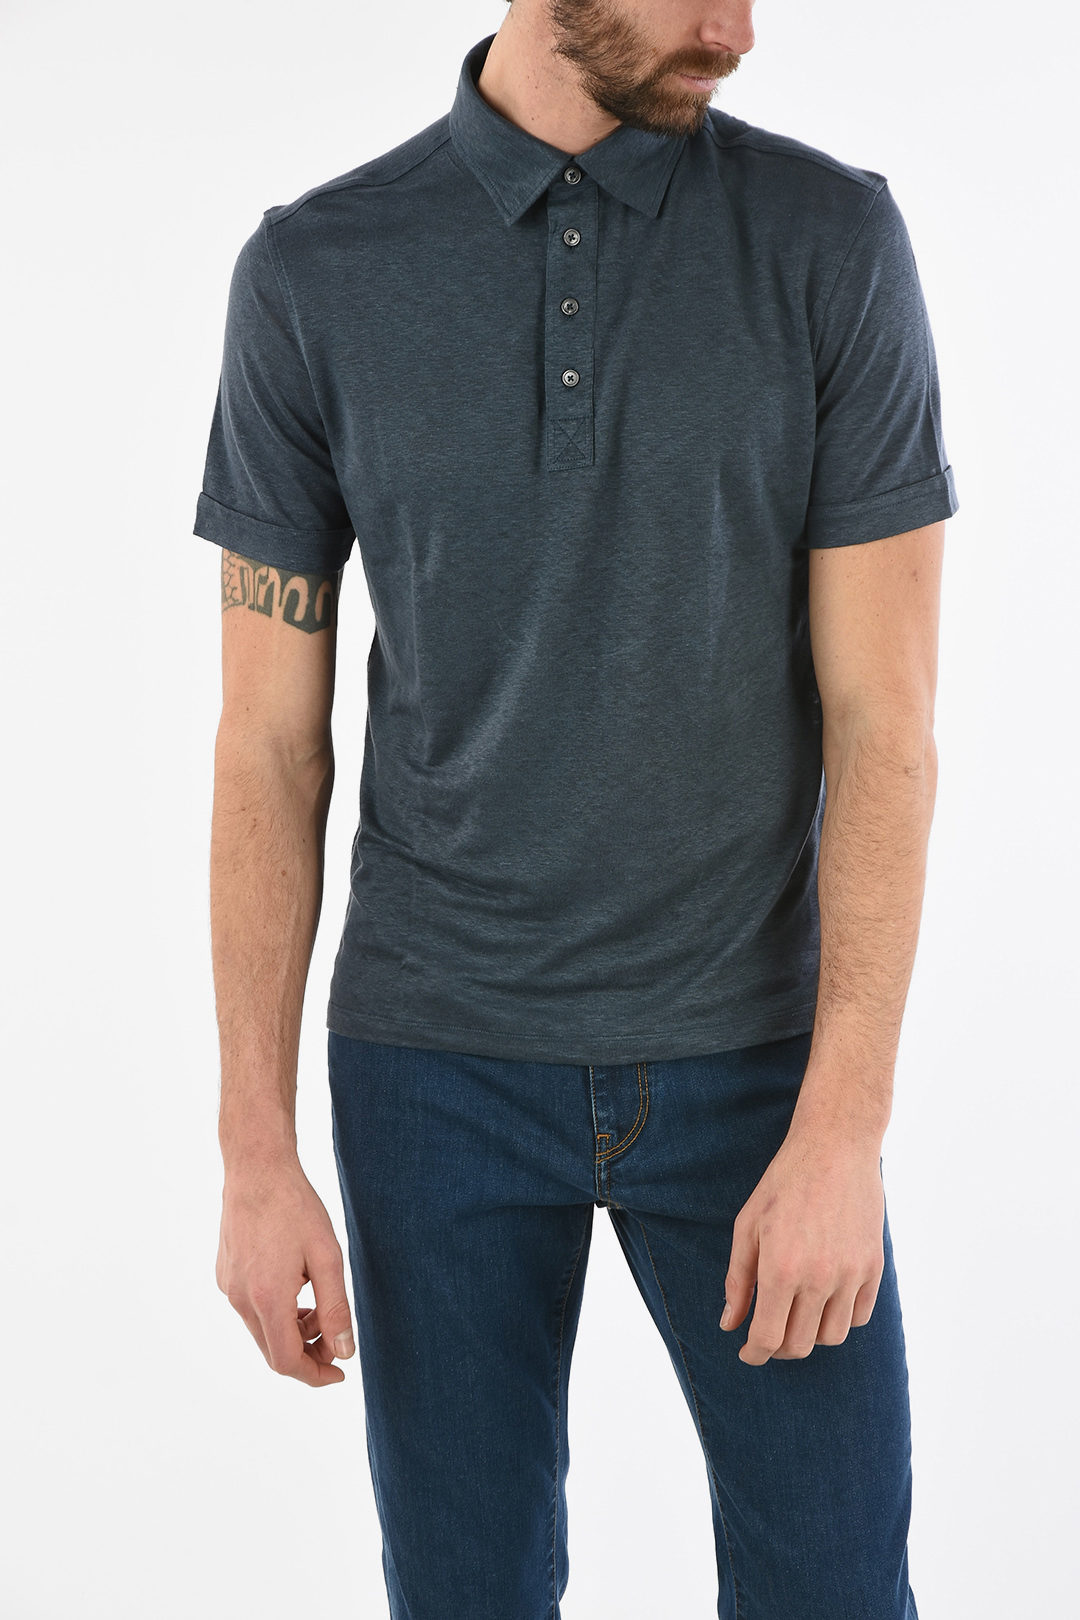 Mens Button Polo Shirts | brebdude.com